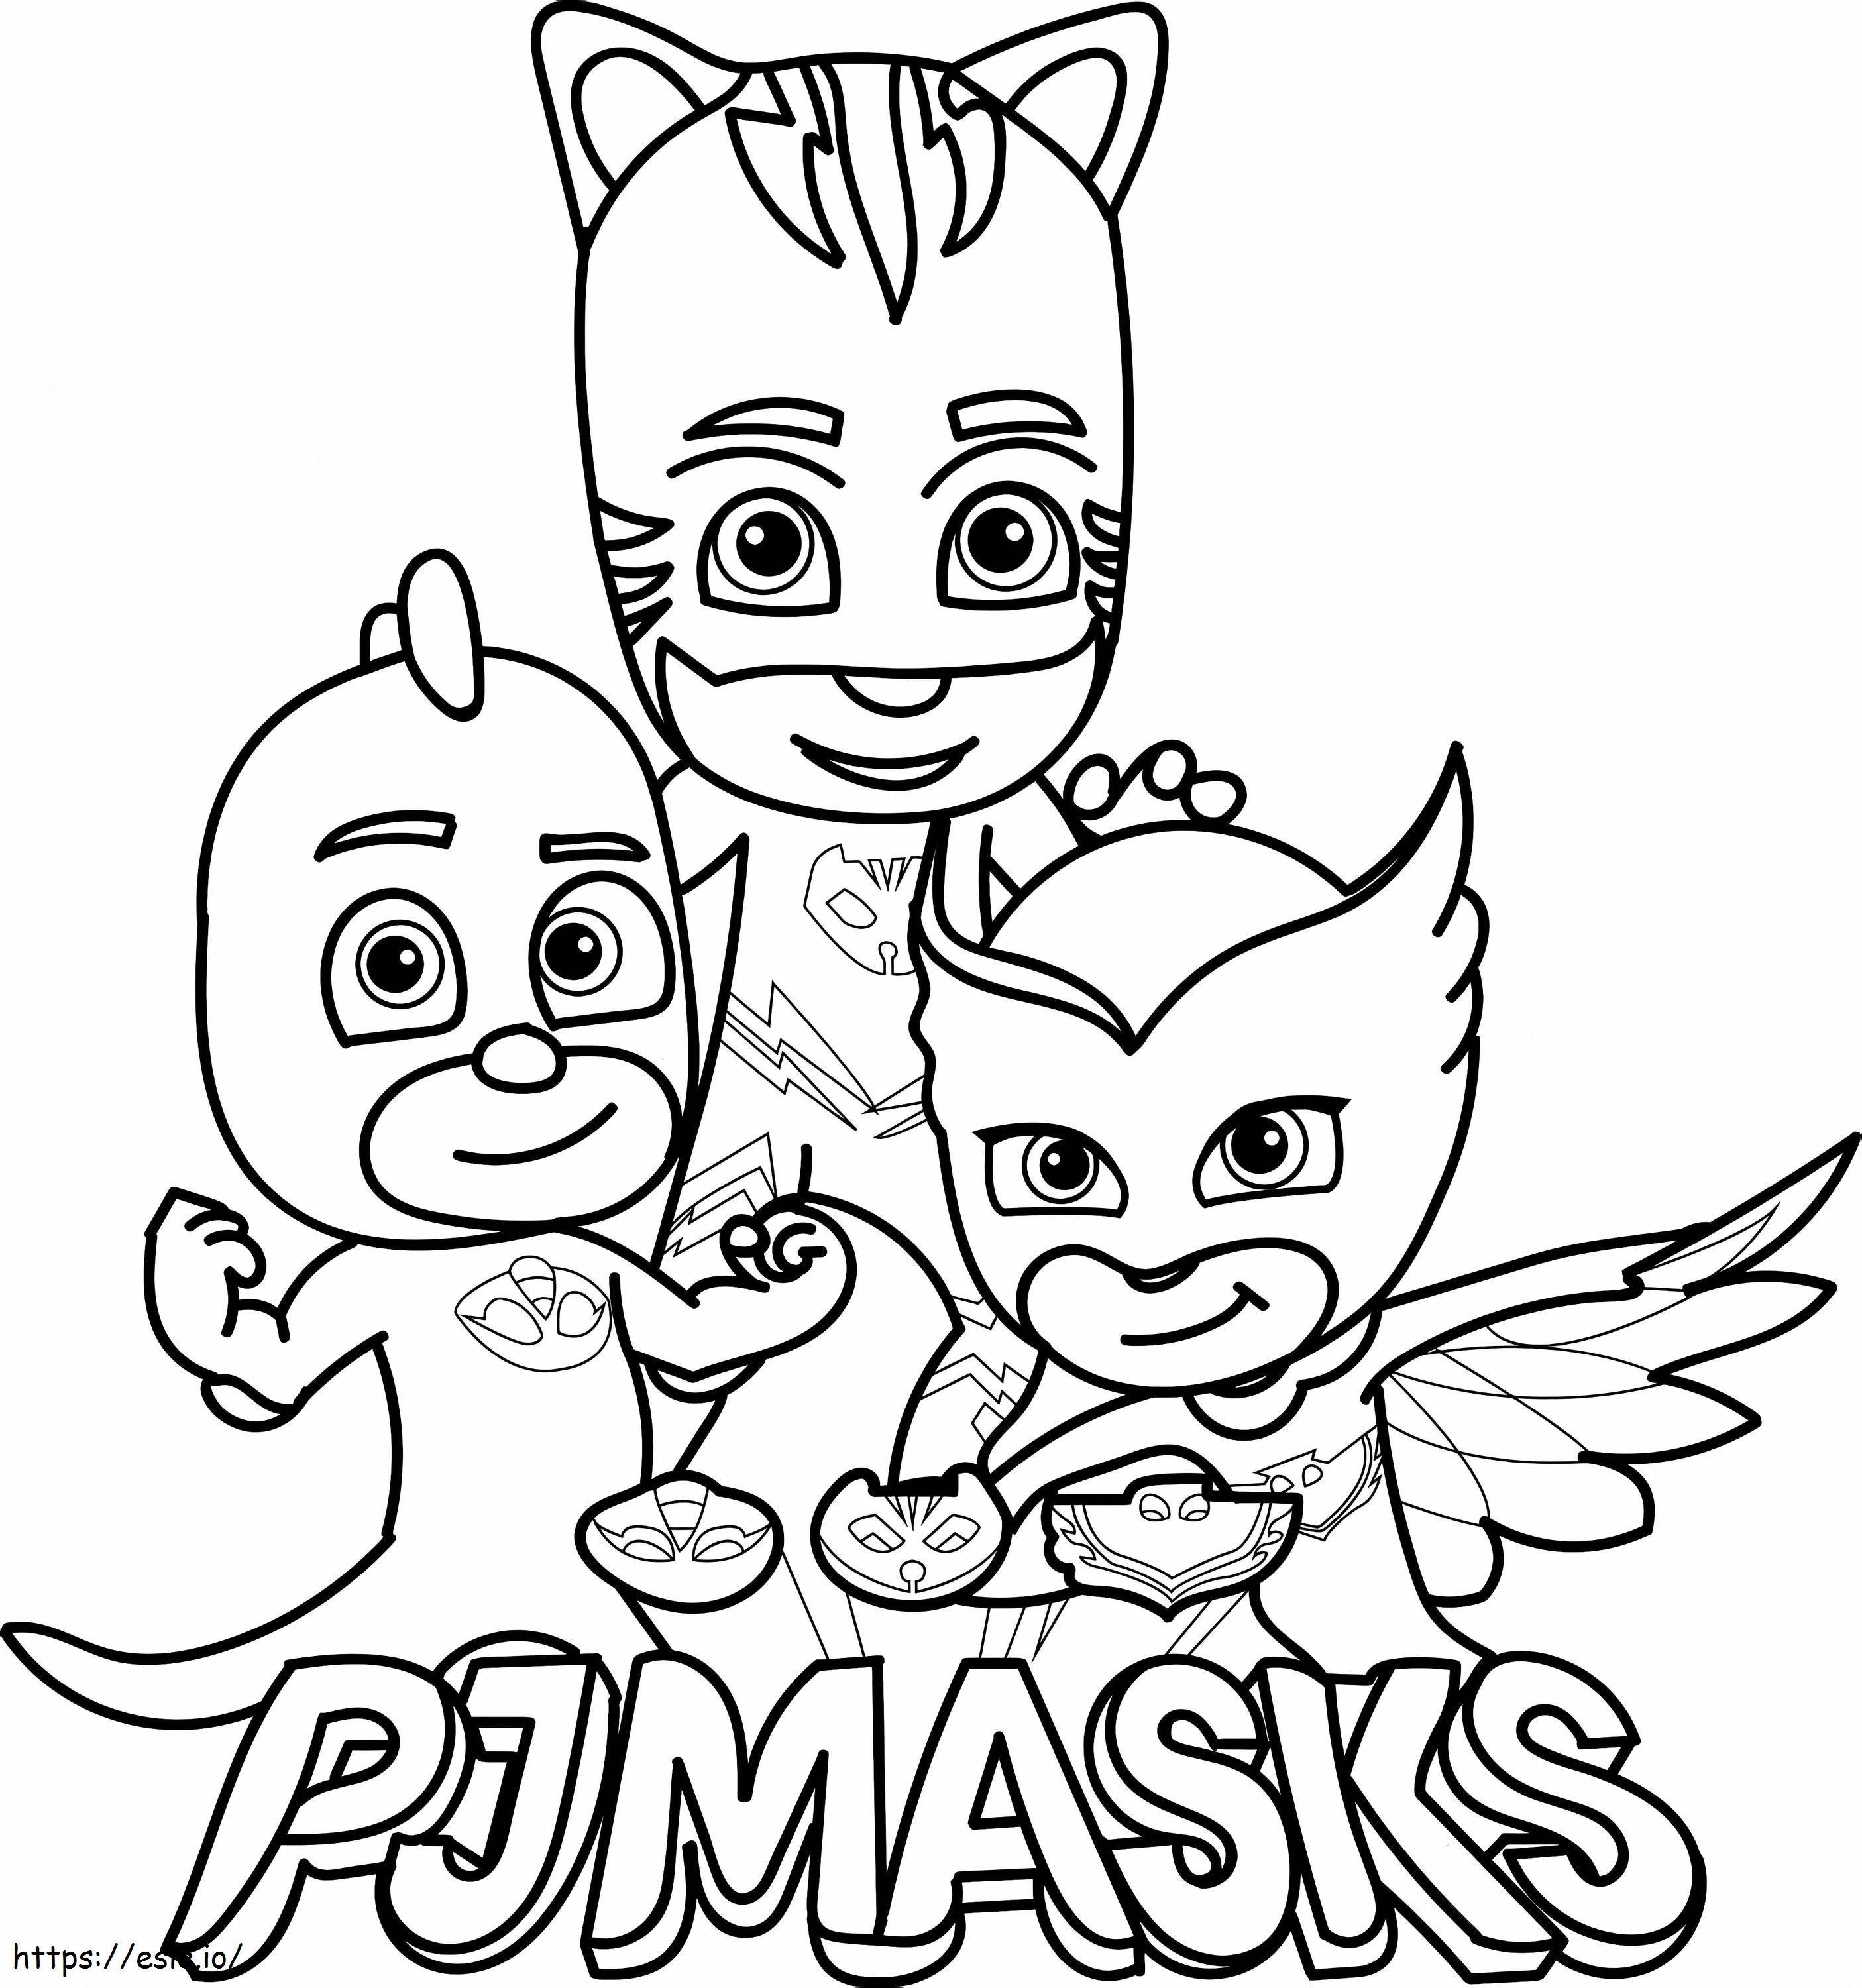 PJMASKS-Team ausmalbilder